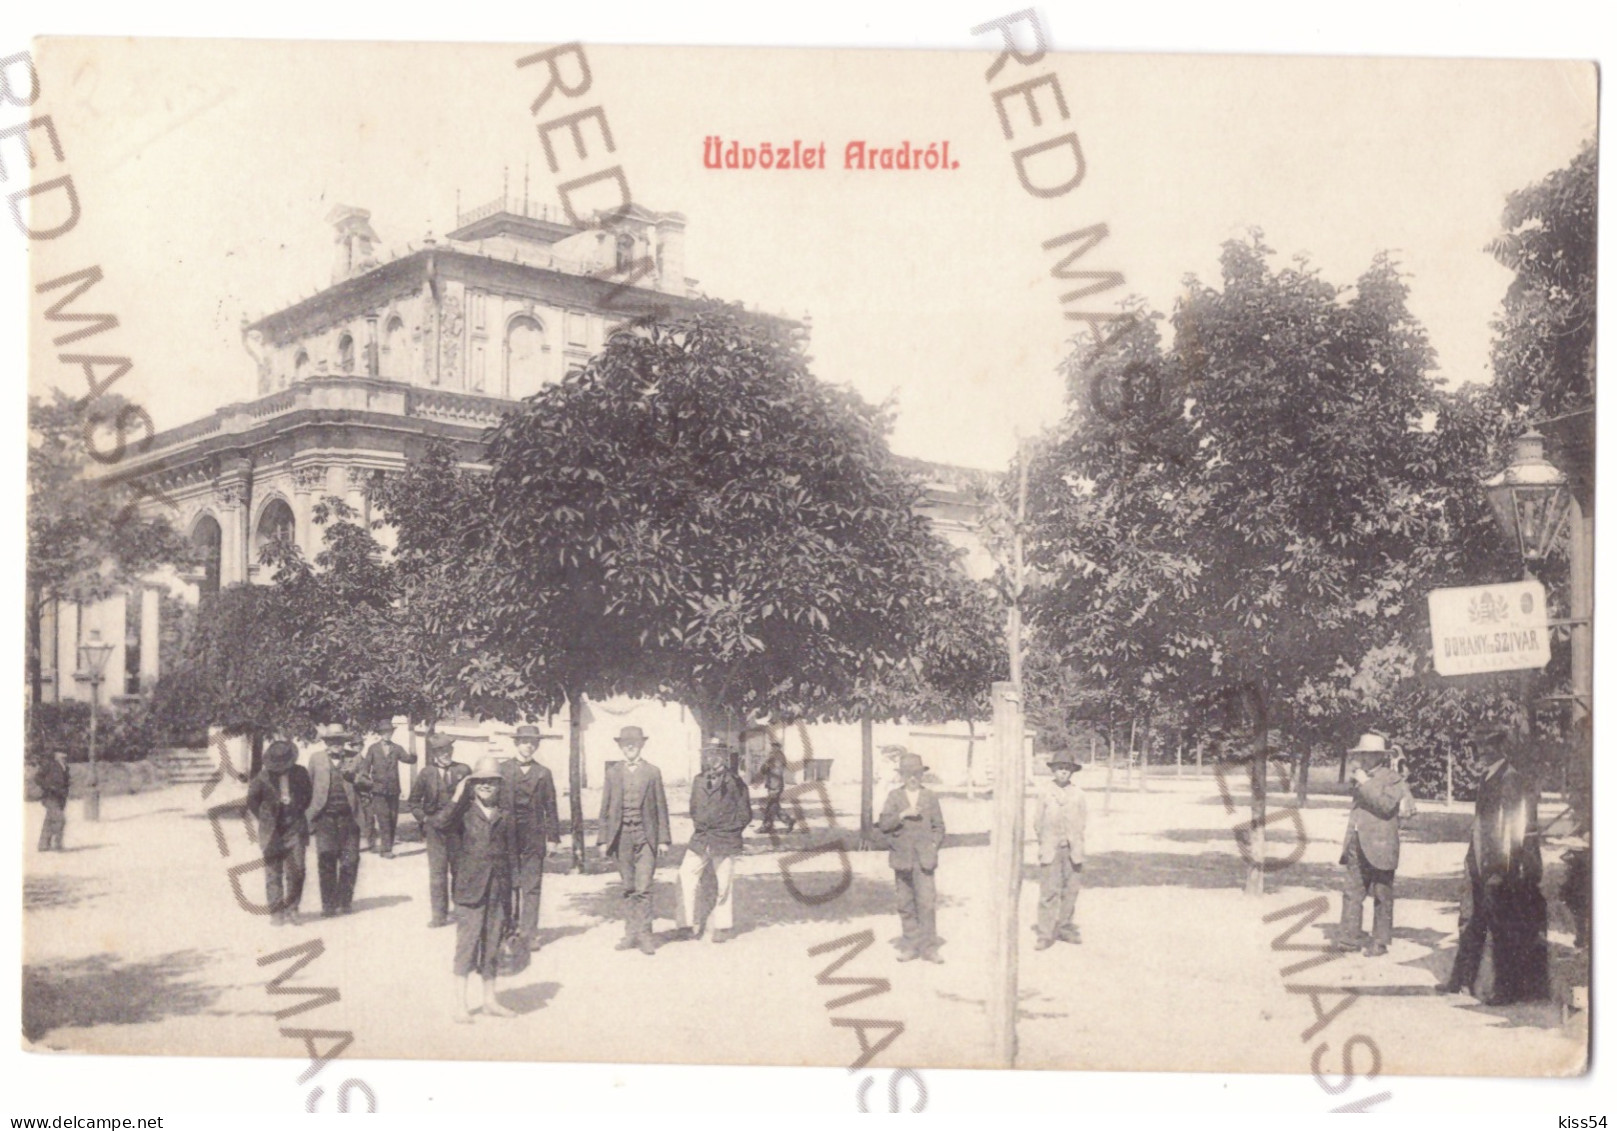 RO 09 - 20712 ARAD, Park, Romania - Old Postcard - Used - 1913 - Roemenië